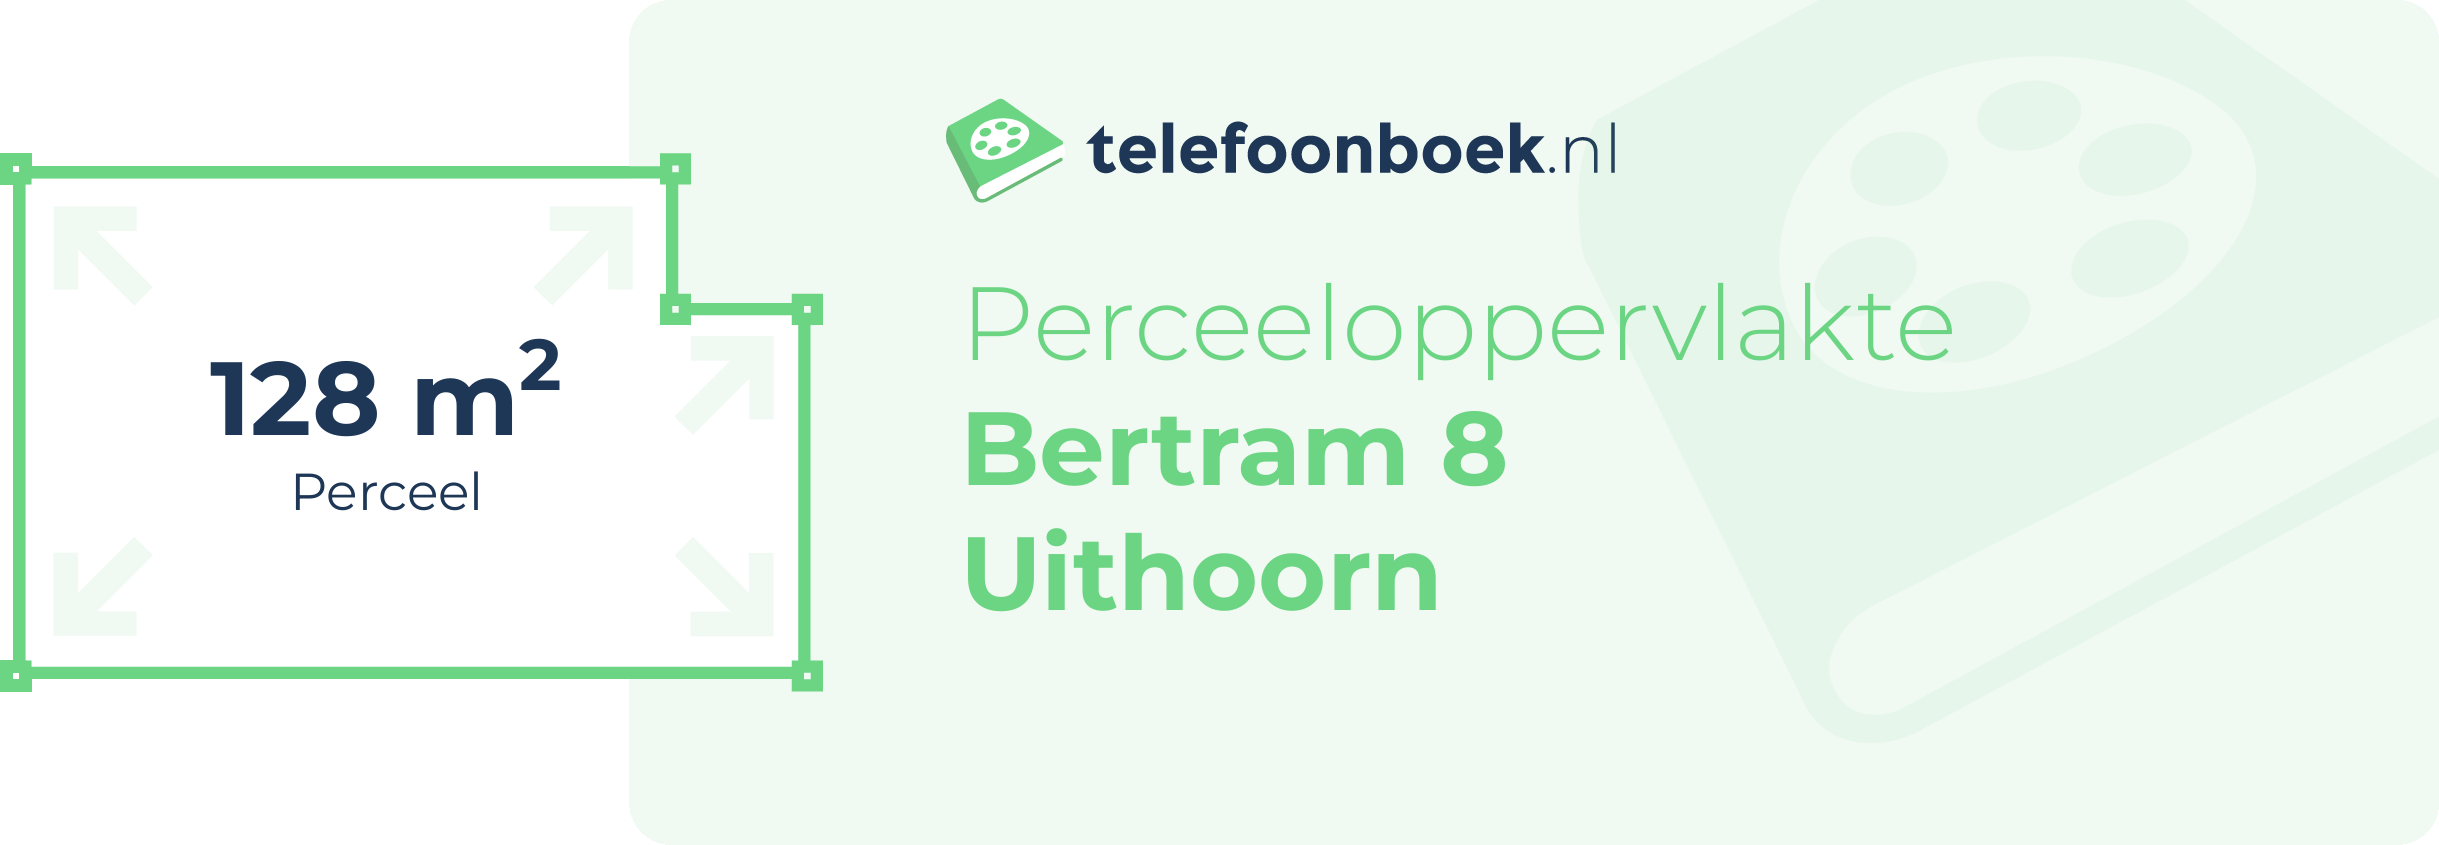 Perceeloppervlakte Bertram 8 Uithoorn